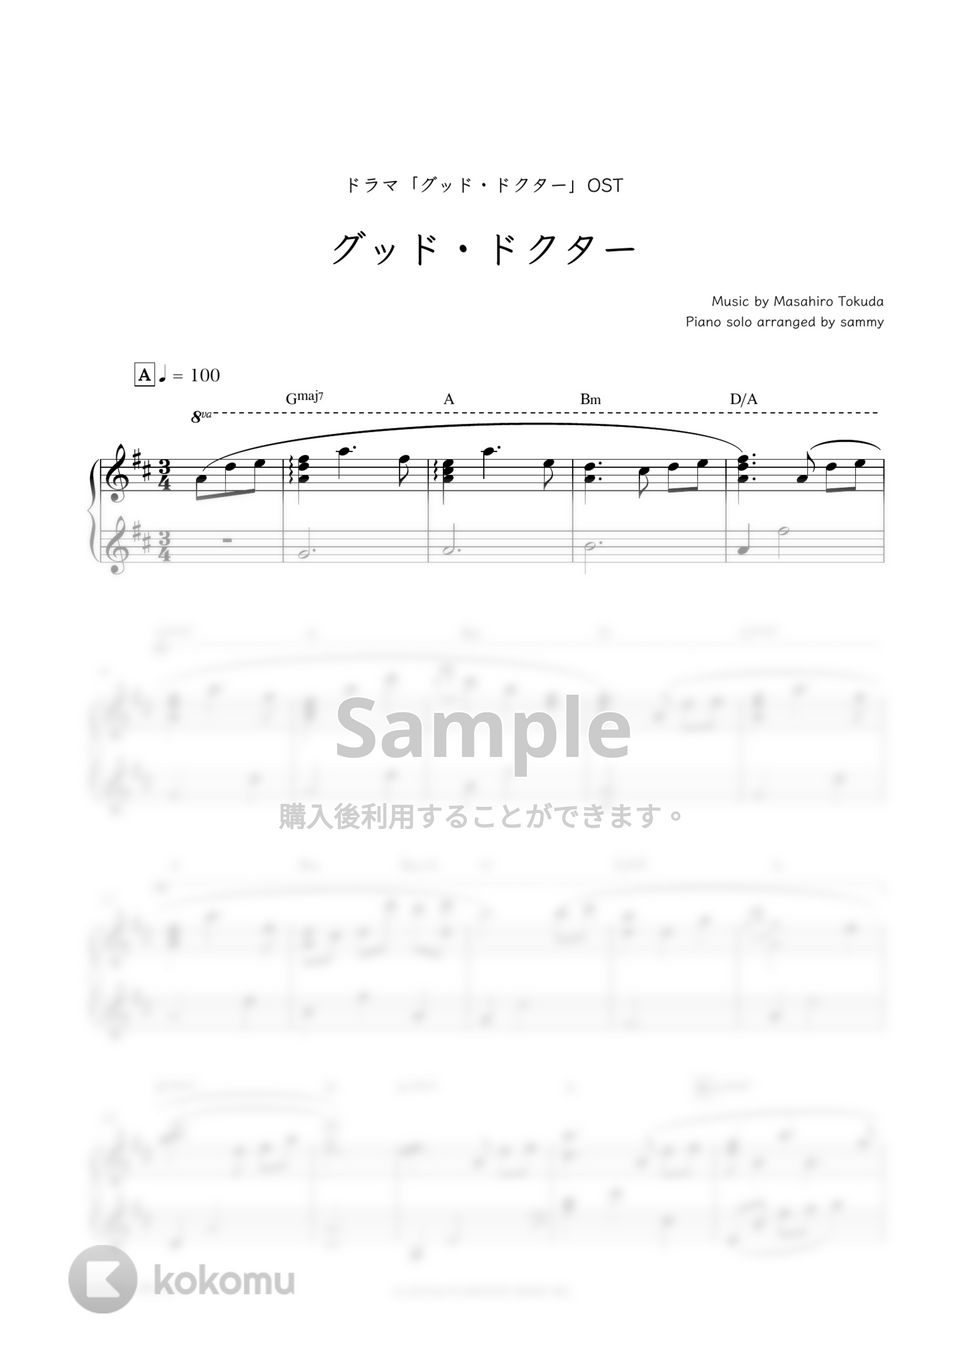 ドラマ『グッド・ドクター』OST - グッド・ドクター by sammy